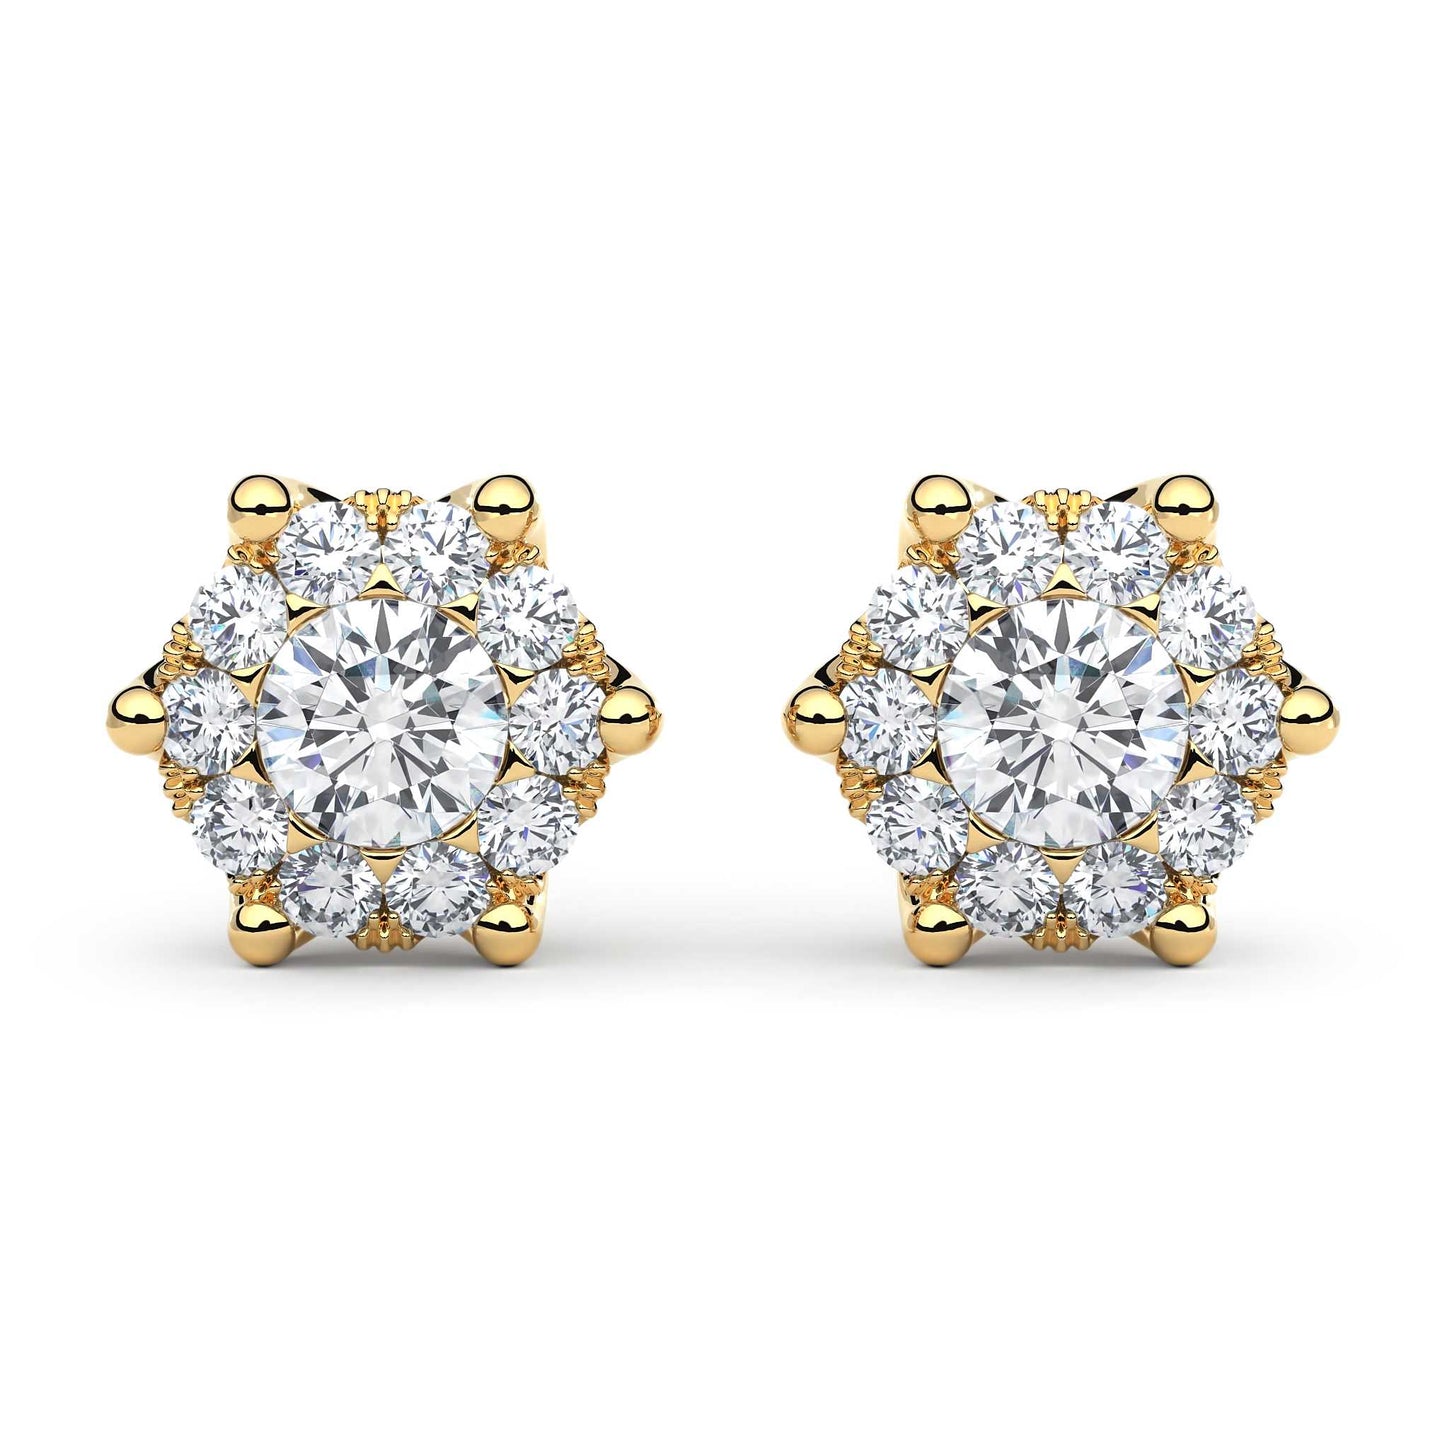 Suokko Timanttikorut -timanttikorvakorut keltakultaa, jossa istutettuna 22 timanttia. Tuotekoodi KE12846